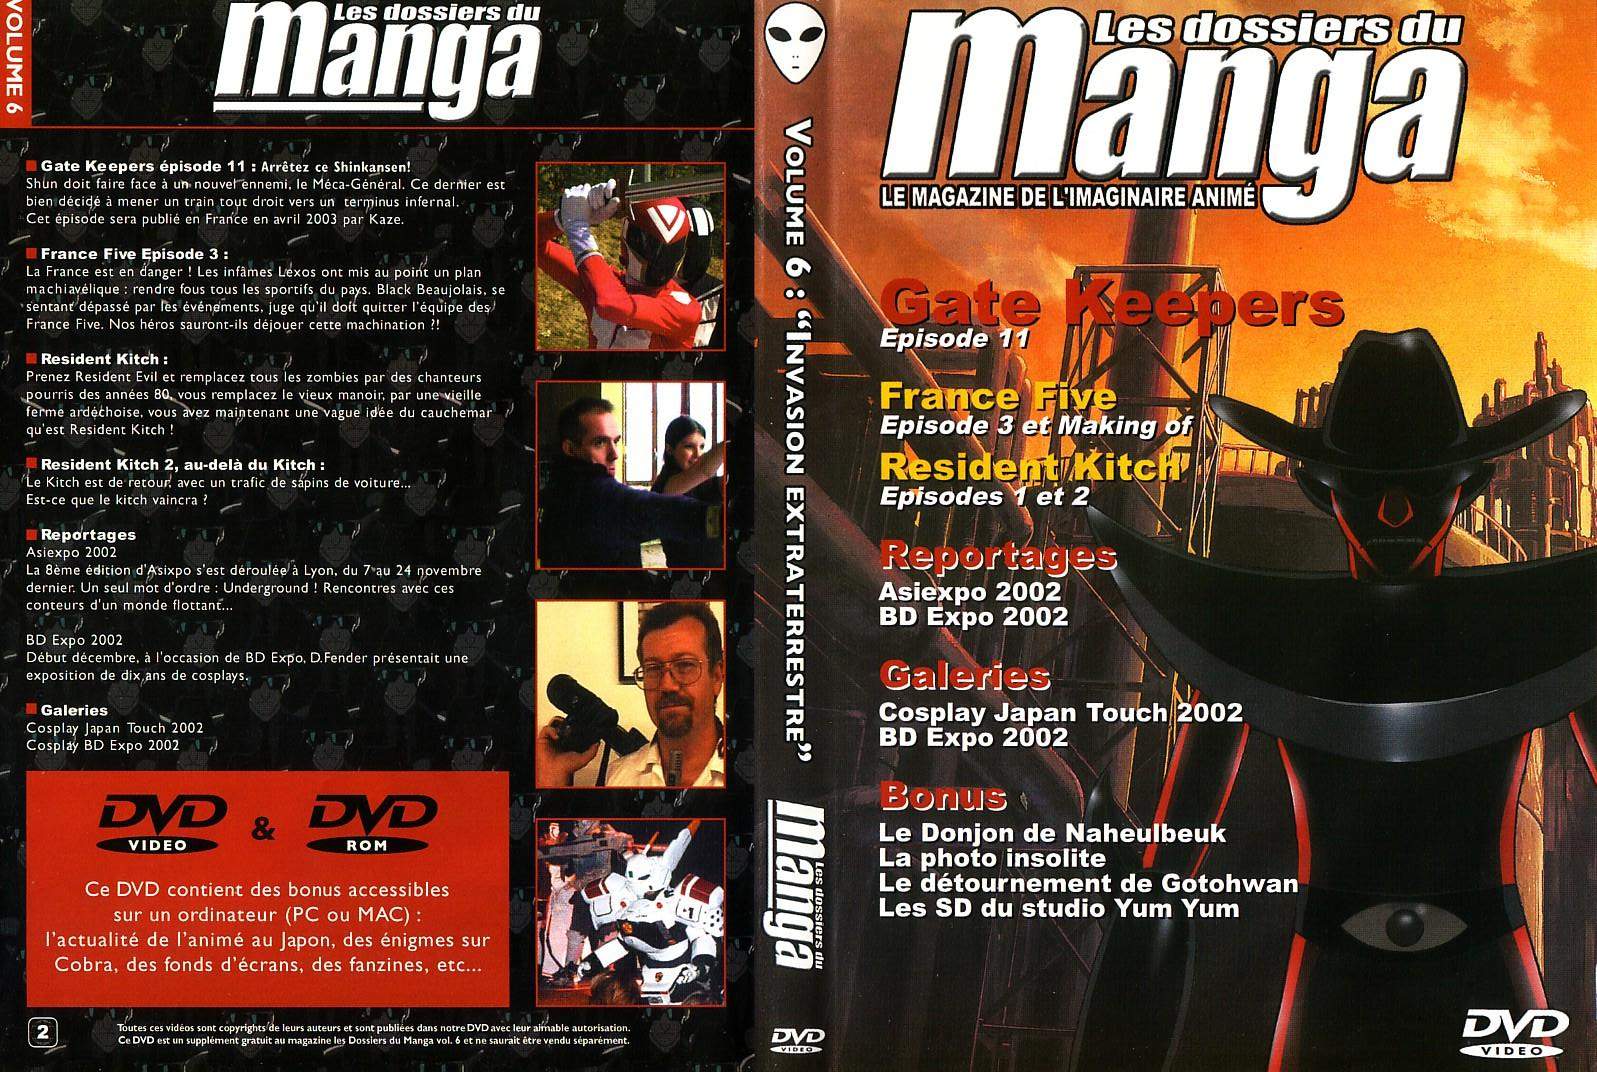 Jaquette DVD Les dossiers du manga vol 06